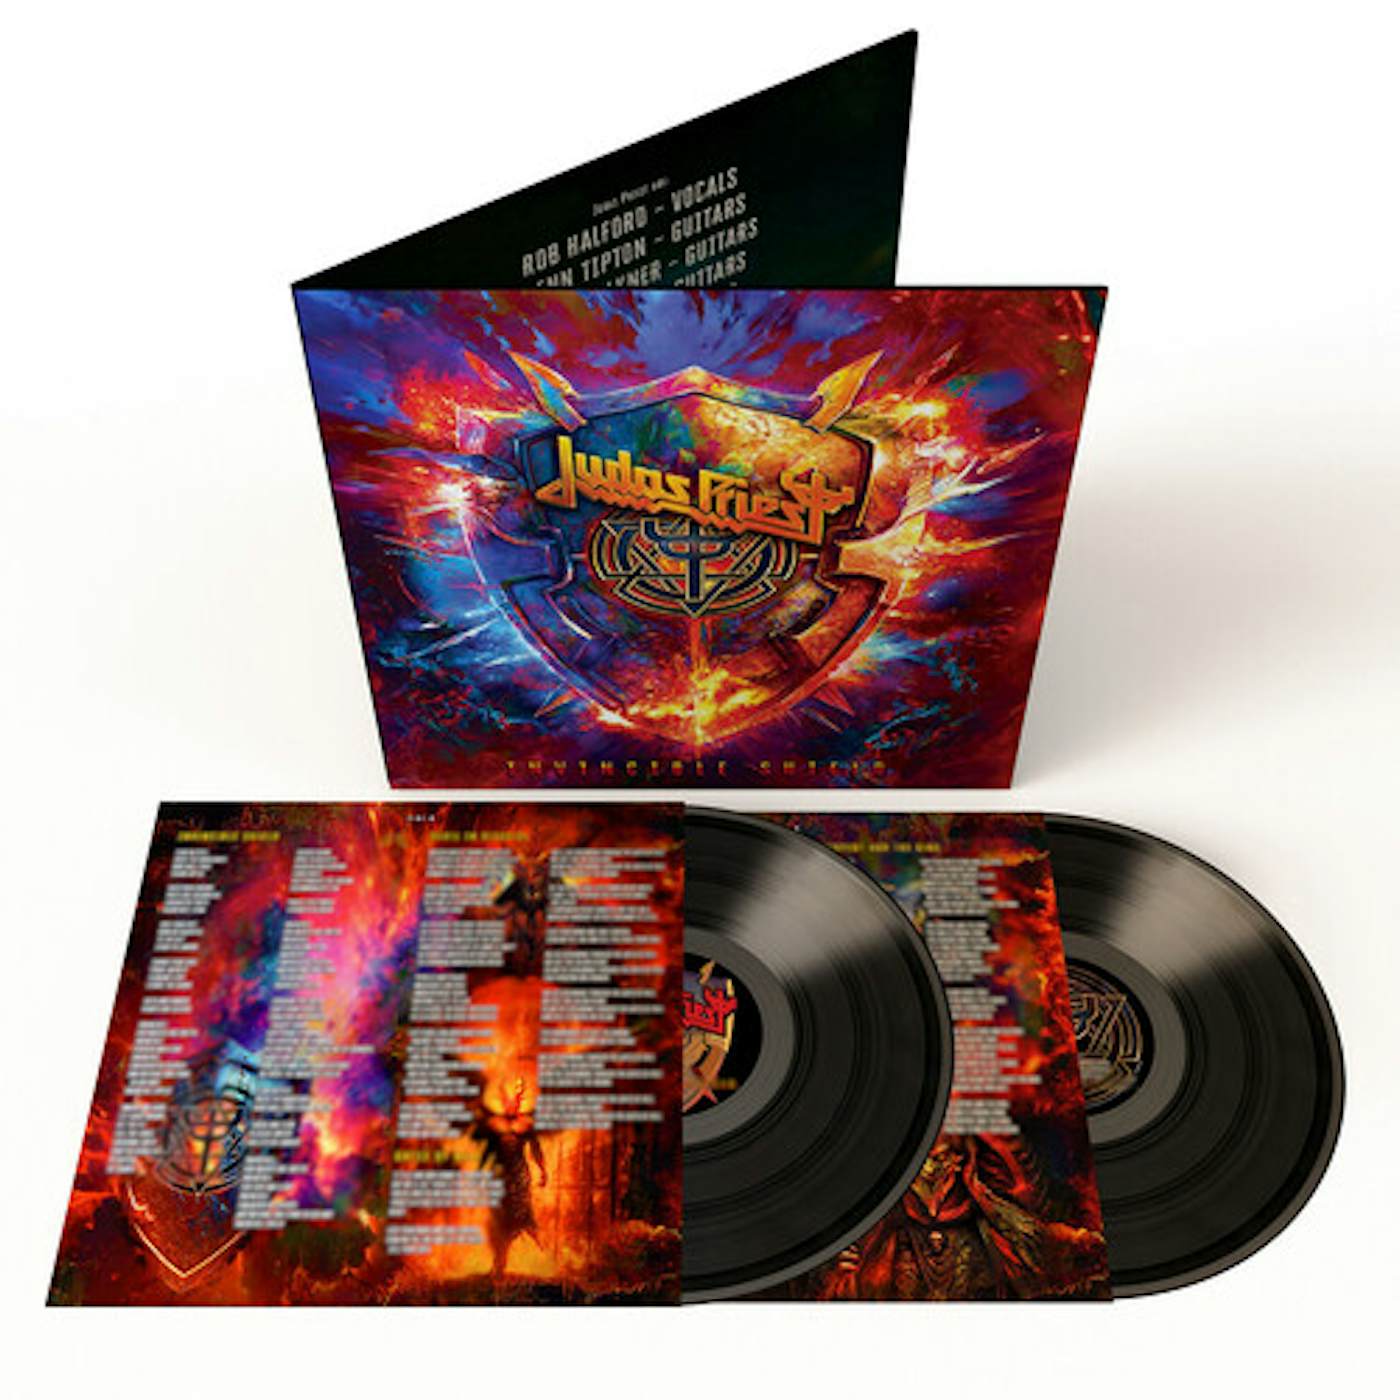 JUDAS PRIEST - SCREAMING FOR VENGEANCE - PICTURE DISC - LP DE VINILO – Rock  Hall Shop